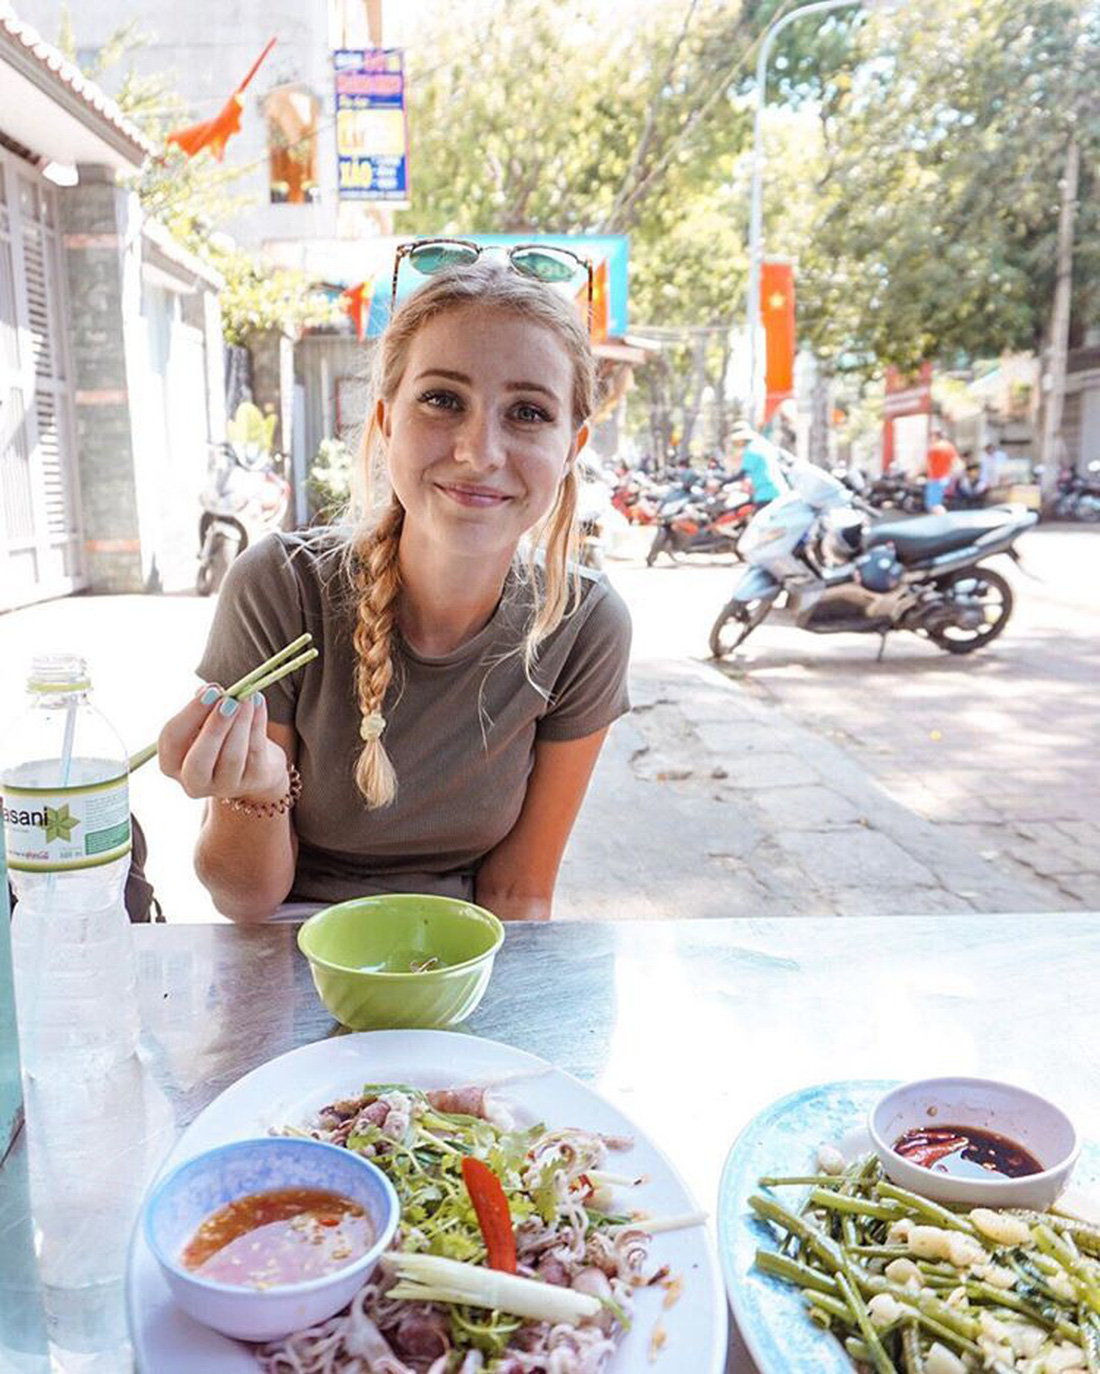 Việt Nam rực rỡ trong mắt  3 nữ blogger nổi tiếng - Ảnh 17.